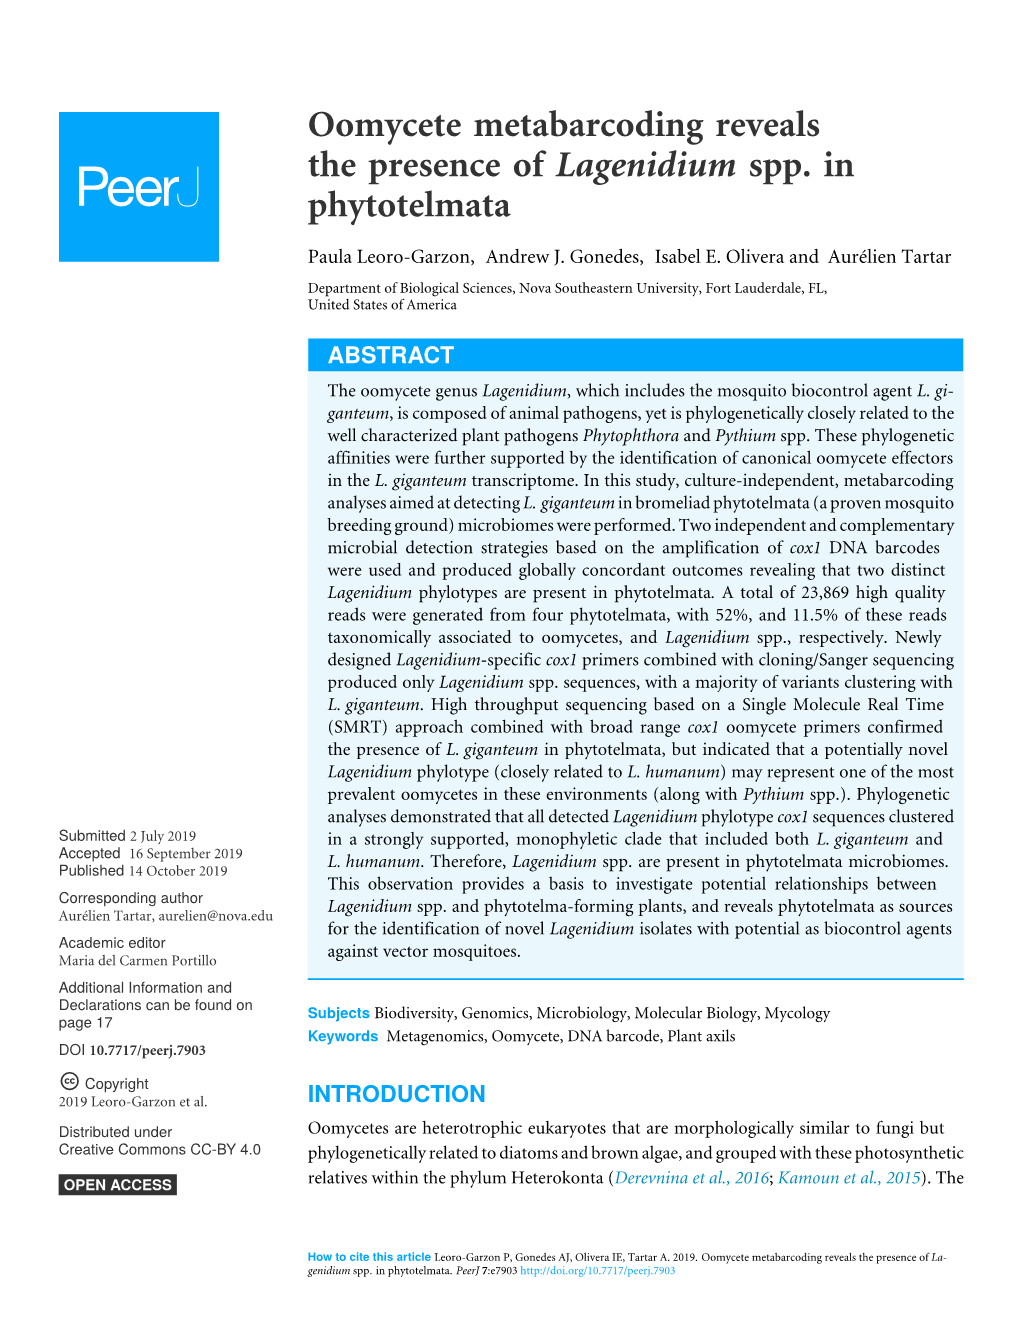 Oomycete Metabarcoding Reveals the Presence of Lagenidium Spp. in Phytotelmata